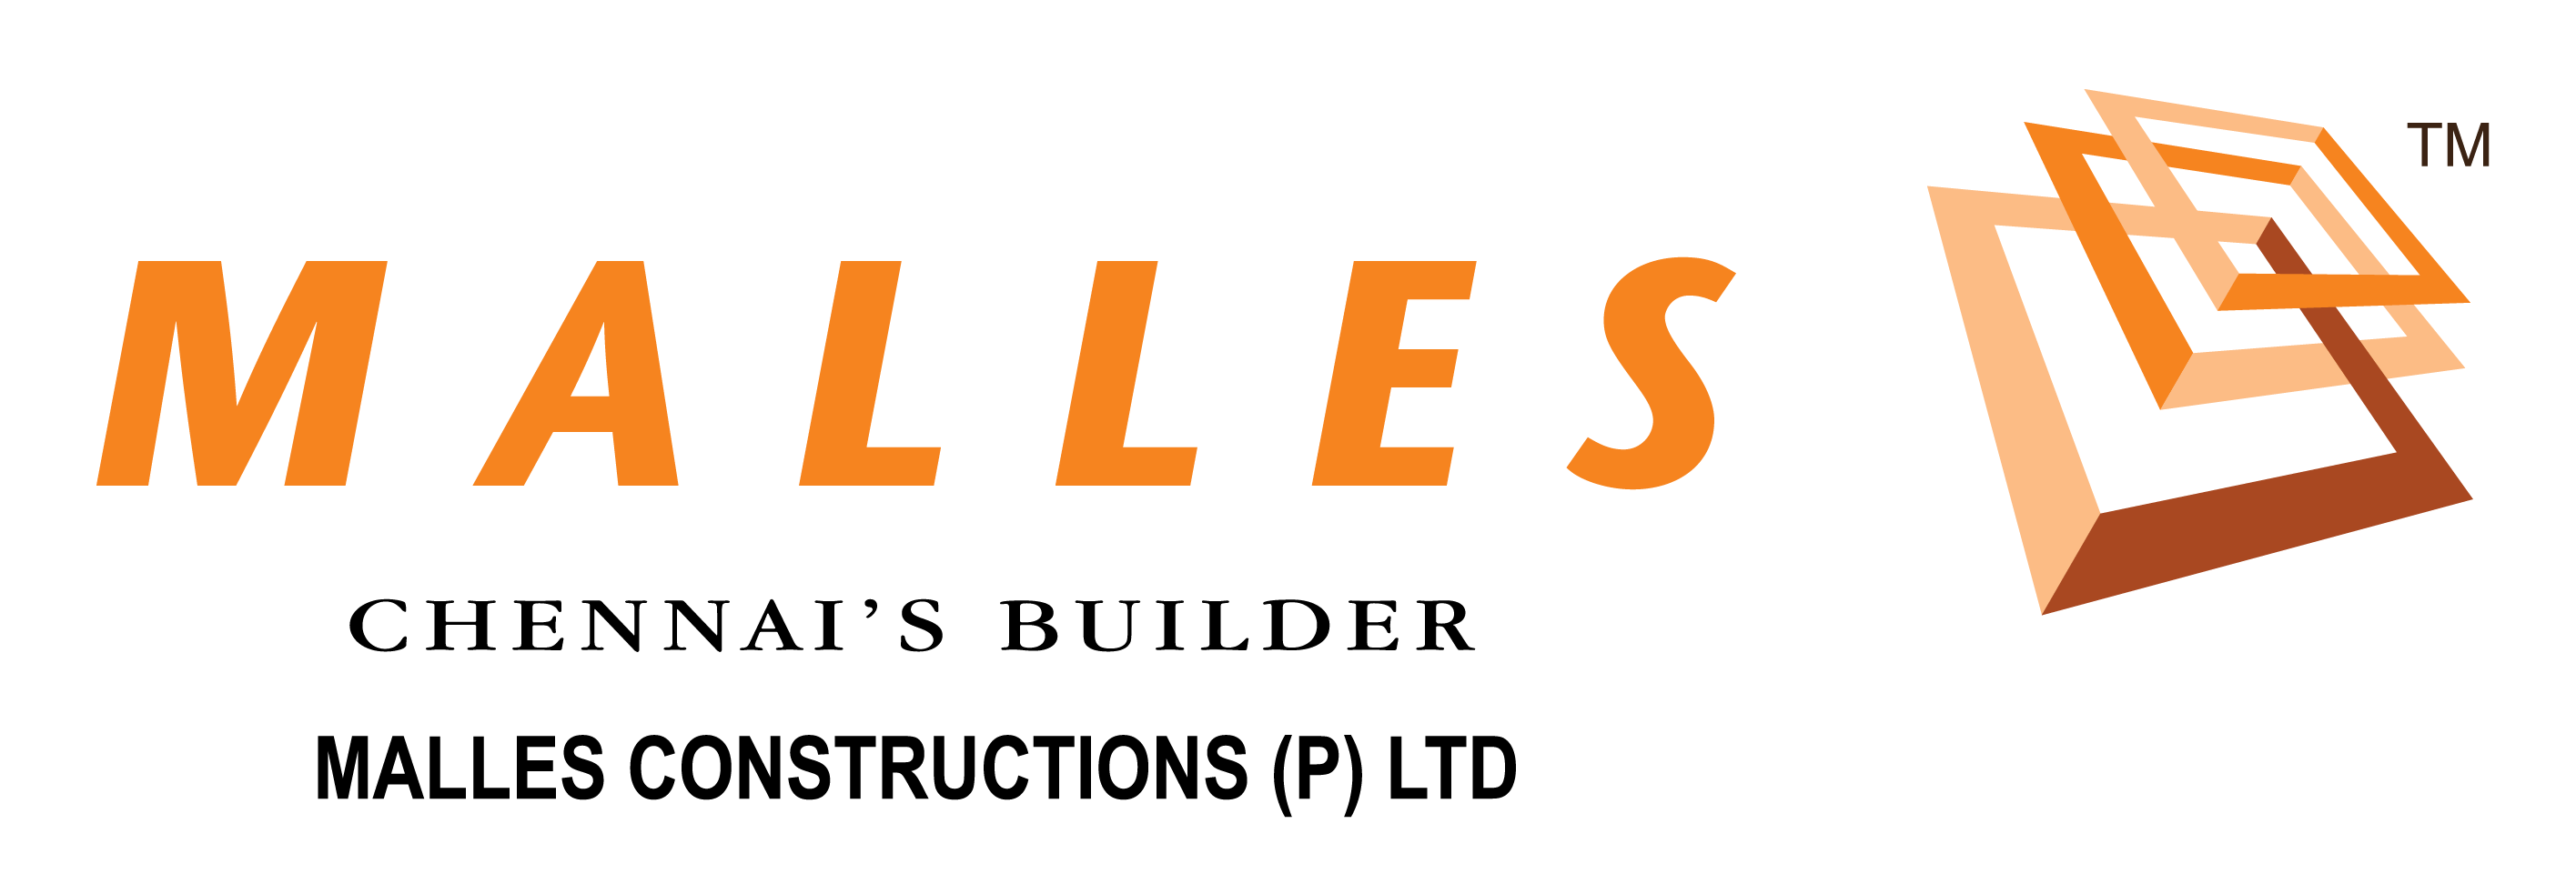 Malles Constructions (p) Ltd